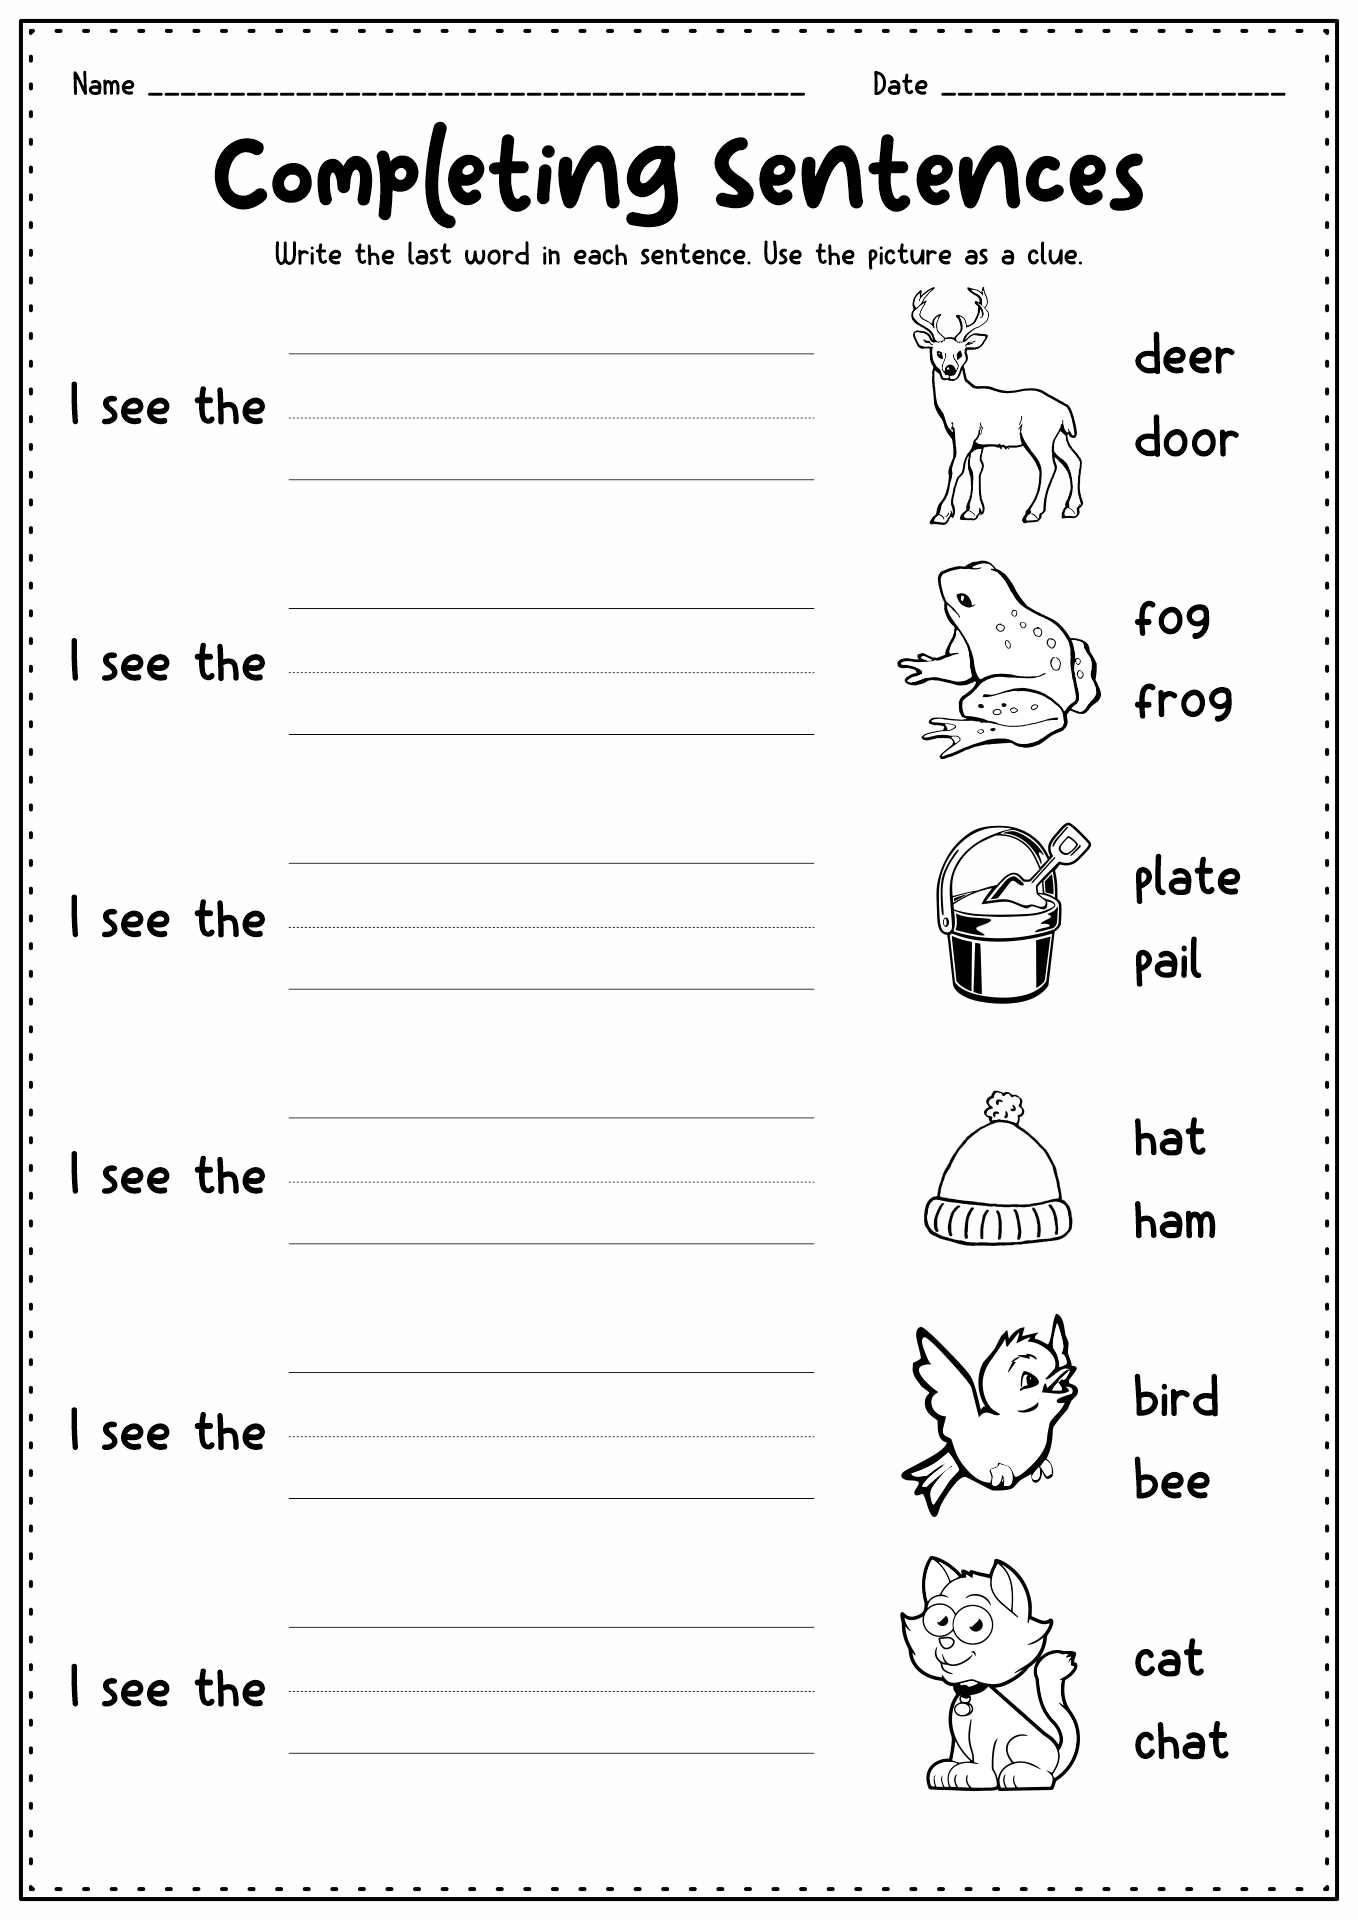 16 Best Images of Alphabet Homework Worksheets - Learning ...